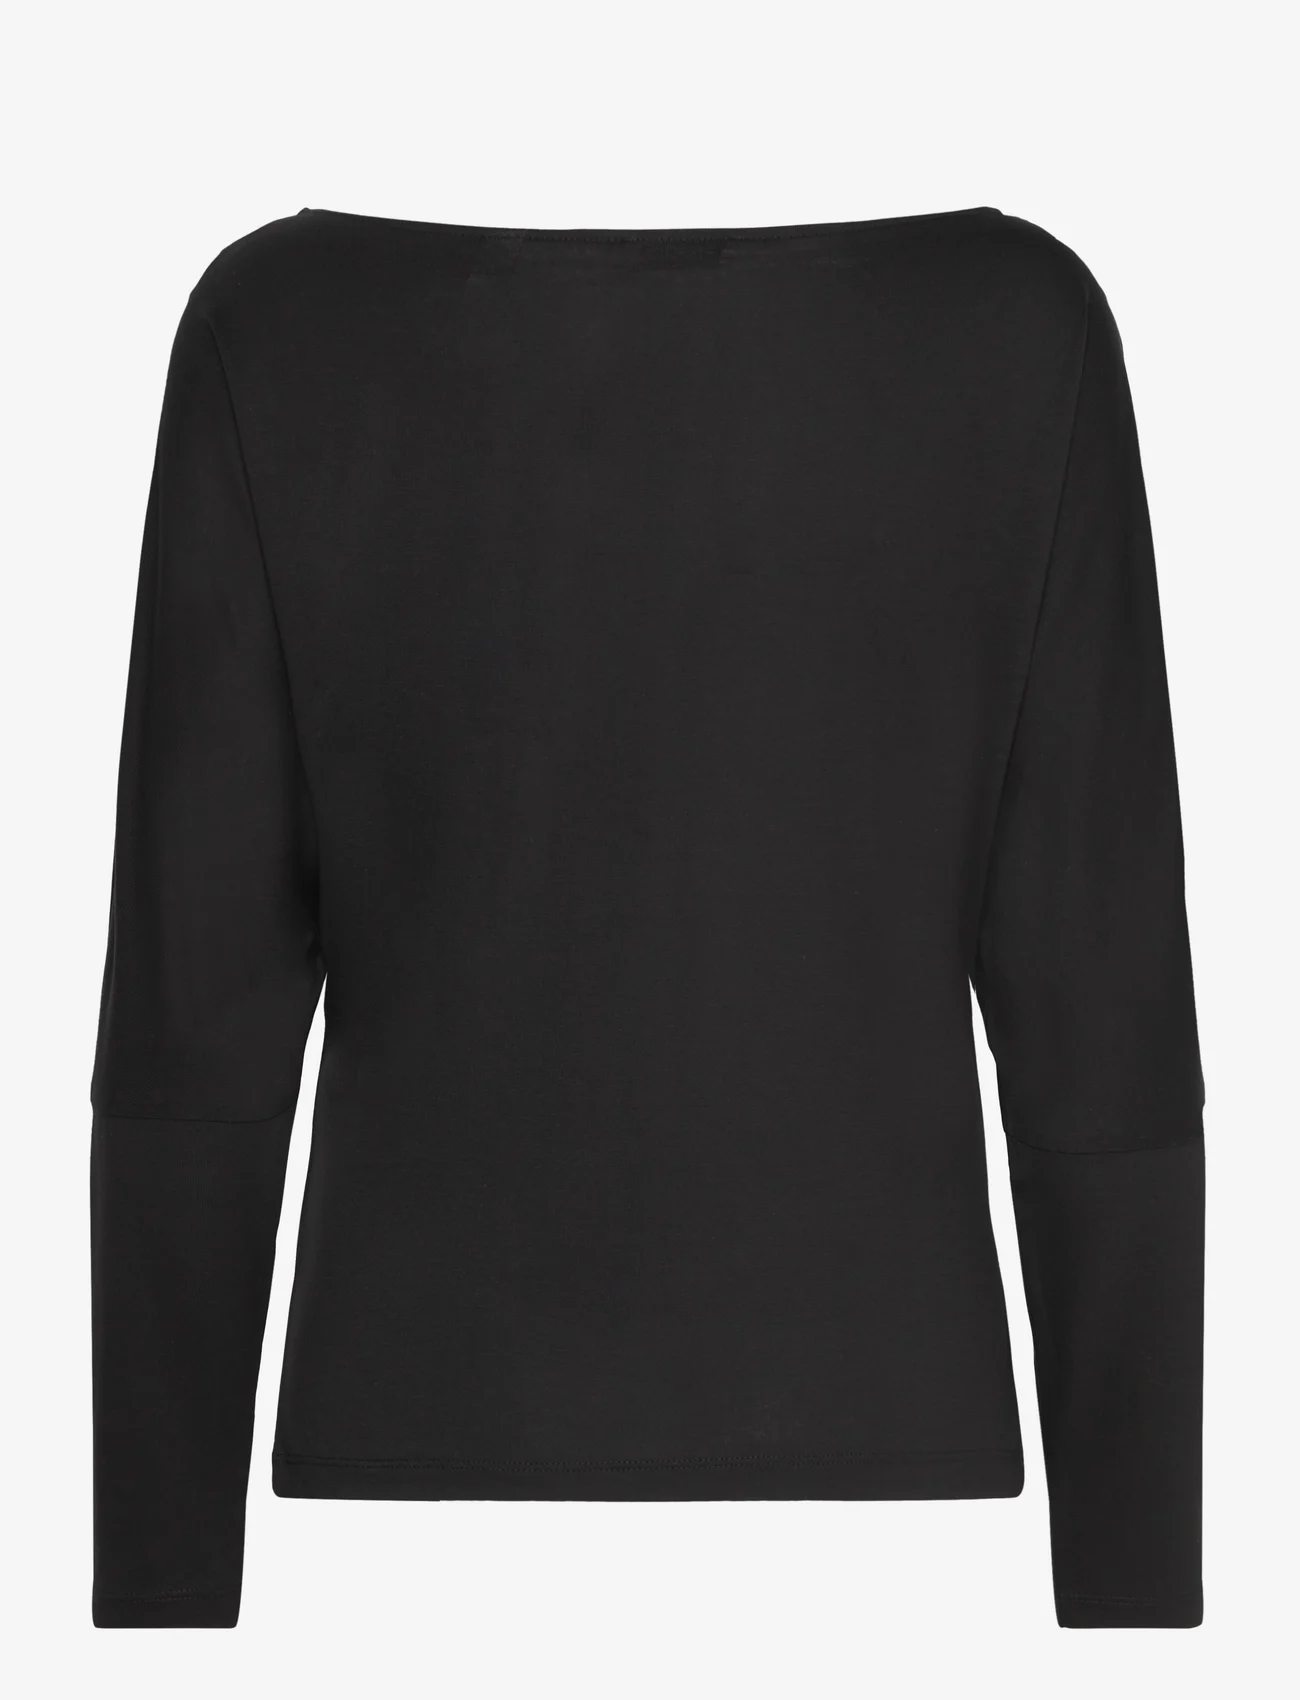 Esprit Casual - T-Shirts - t-shirts & tops - black - 1